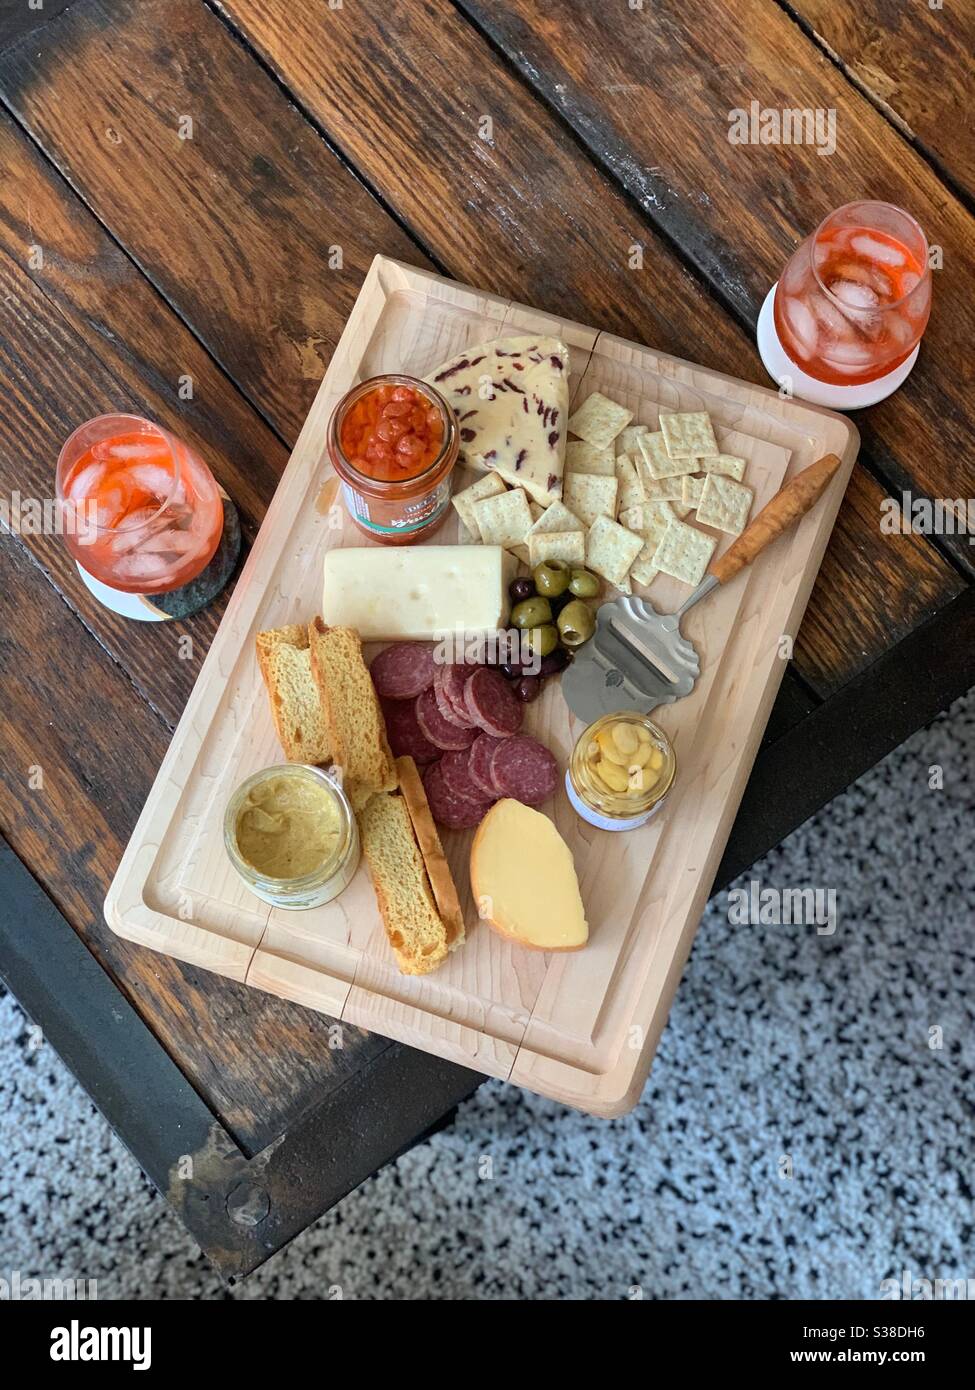 Ein Blick von oben auf eine Wurstplatte mit Käse, Salami, Oliven, etc. Und zwei Gläsern Wein Stockfoto